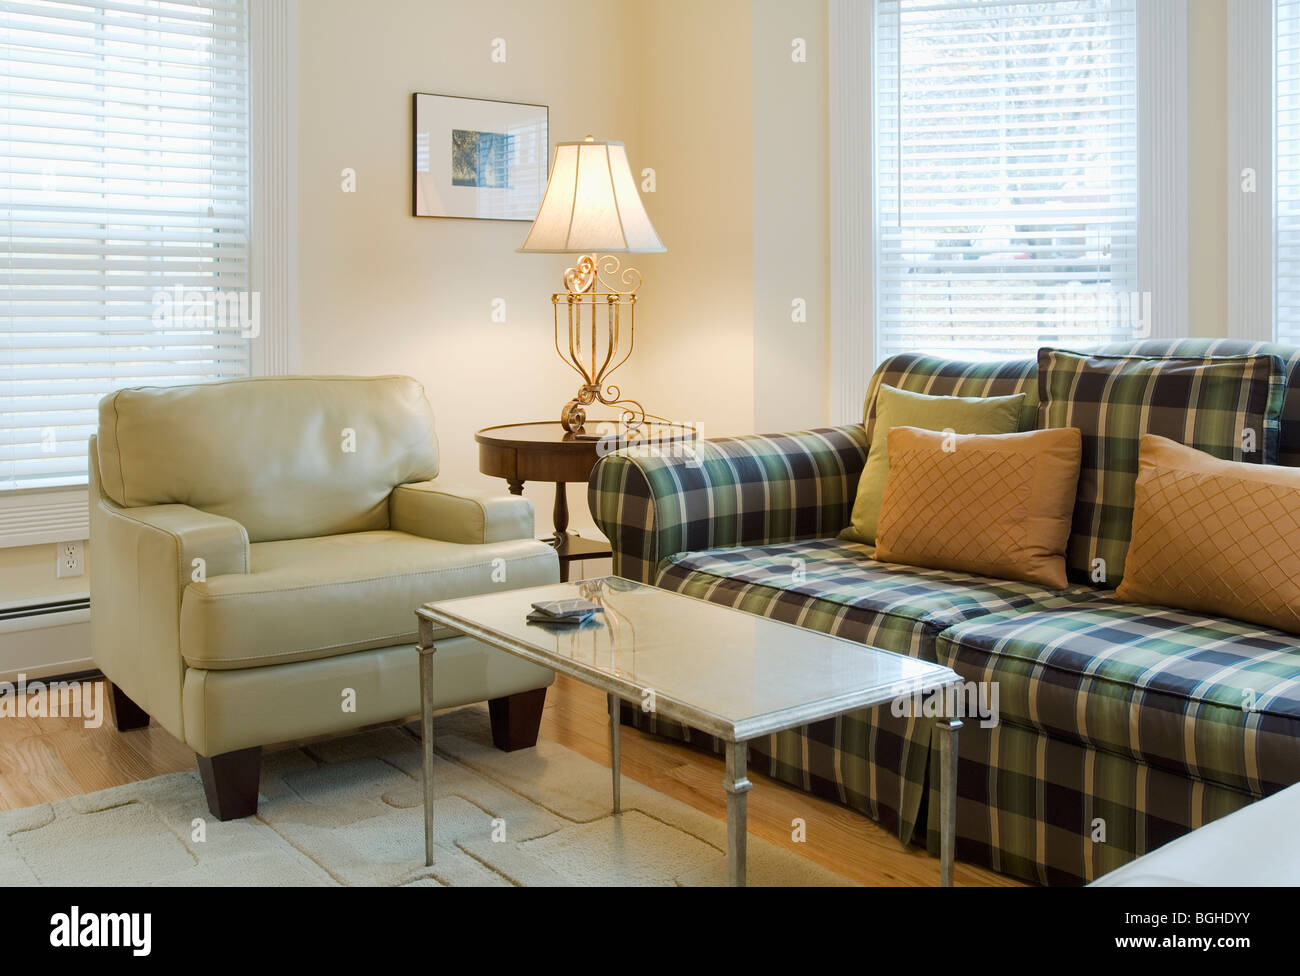 Wohnzimmer mit karierten sofa Stockfoto